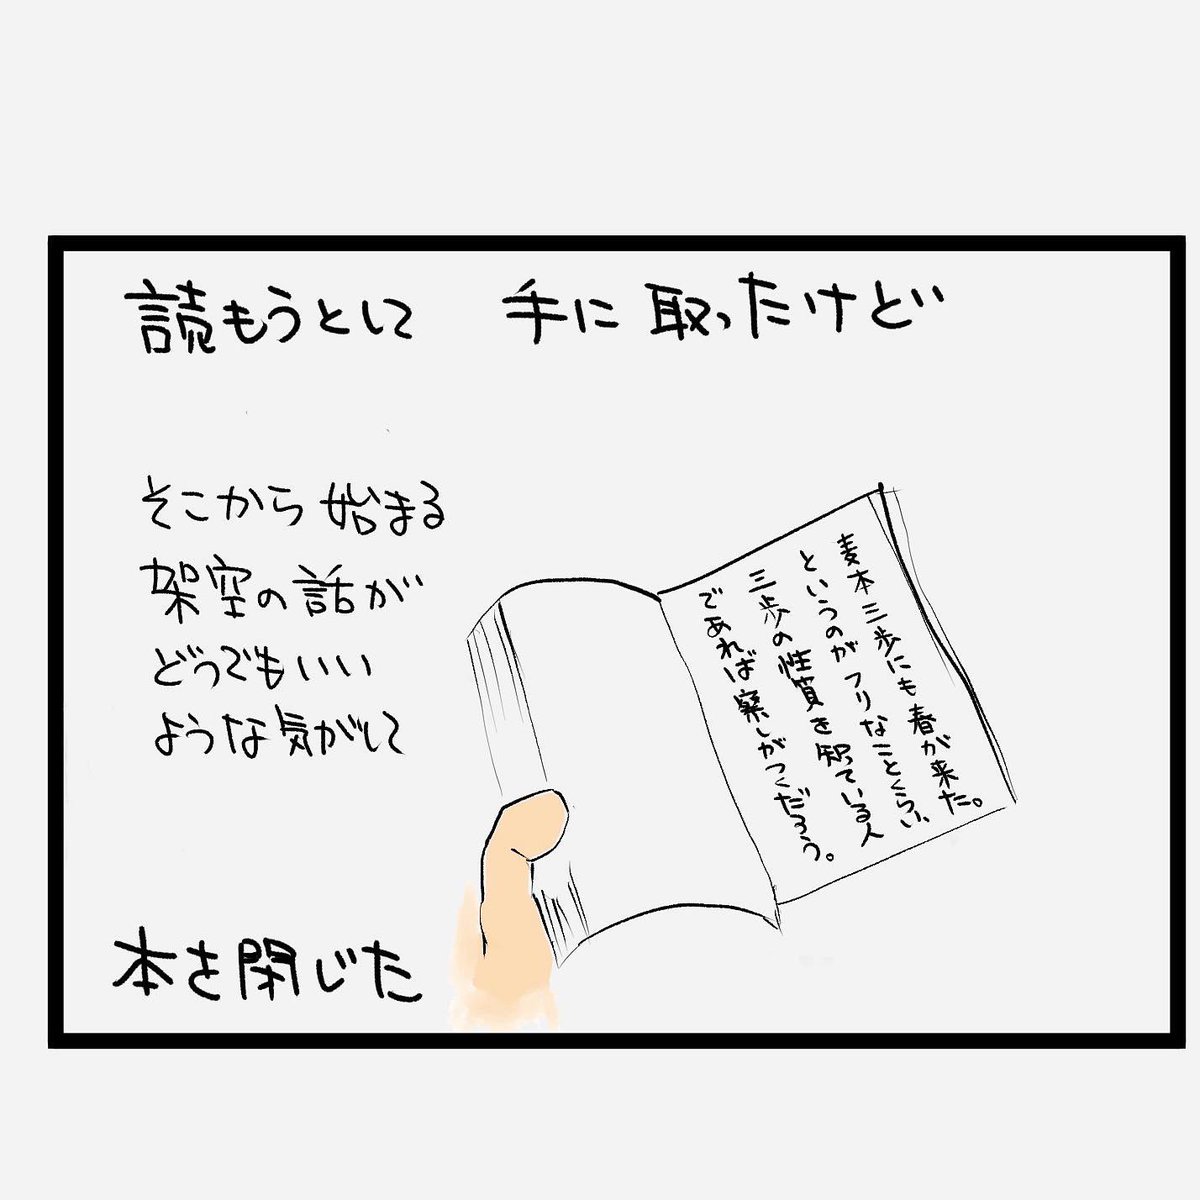 #四コマ漫画
#小説 